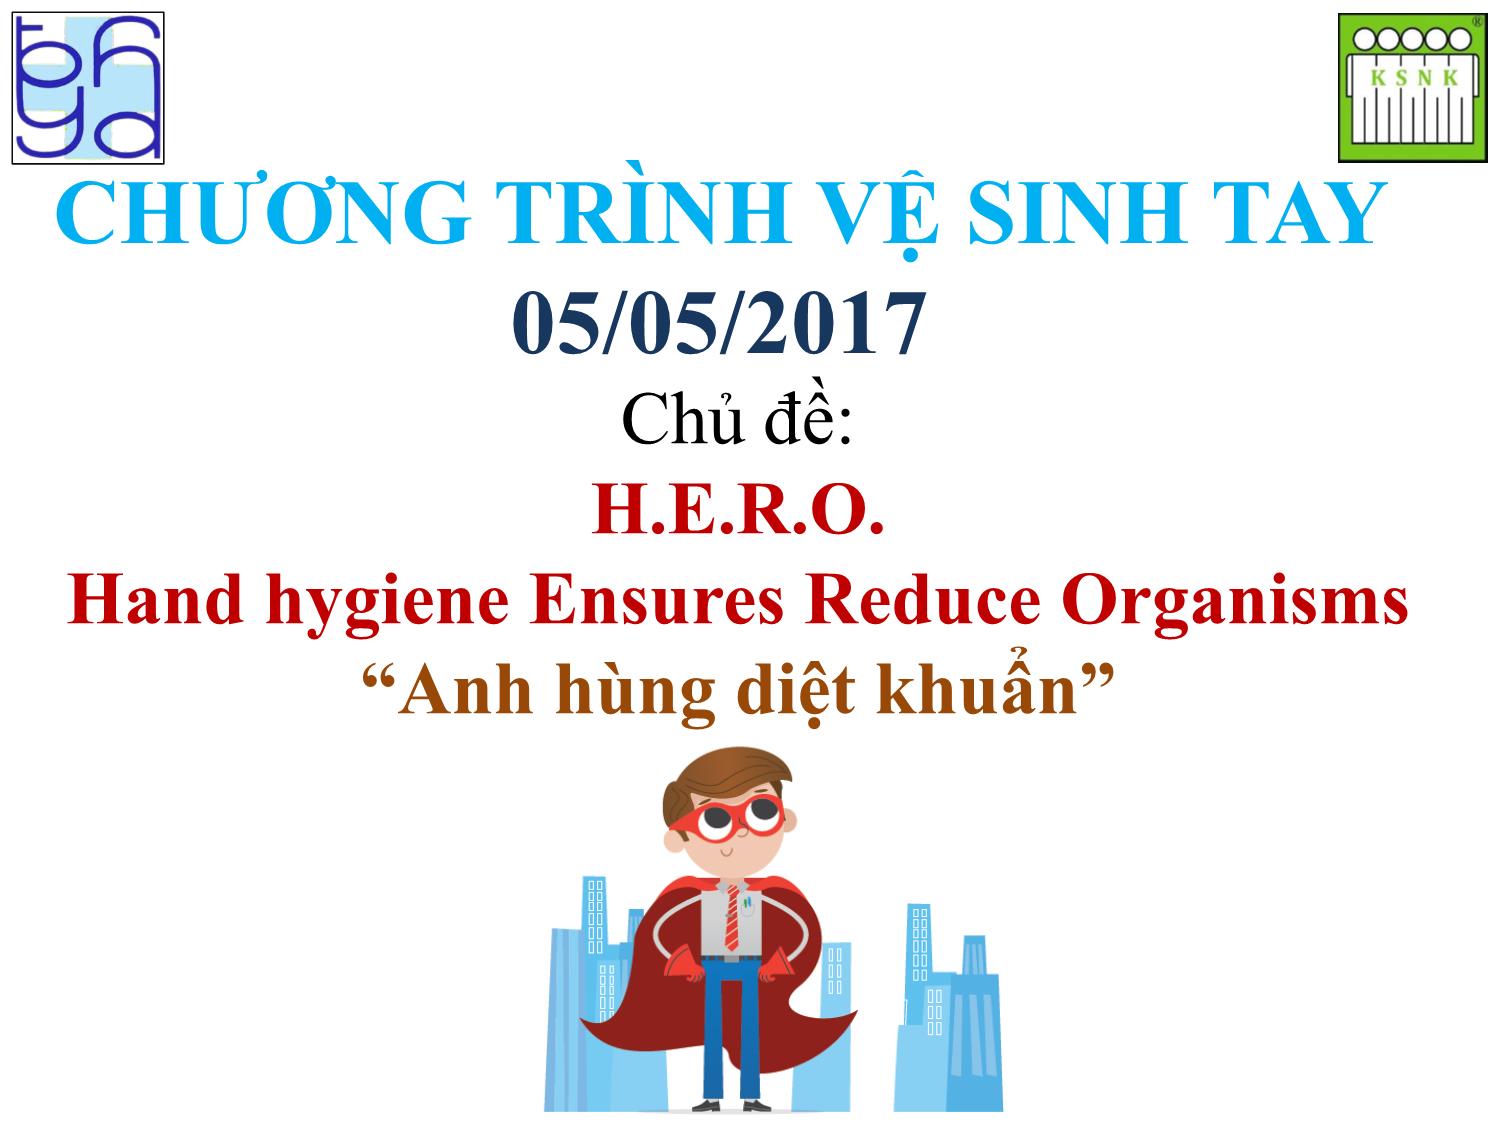 Chương trình vệ sinh tay - Chủ đề: H.E.R.O.-Hand hygiene Ensures Reduce Organisms “Anh hùng diệt khuẩn” trang 1